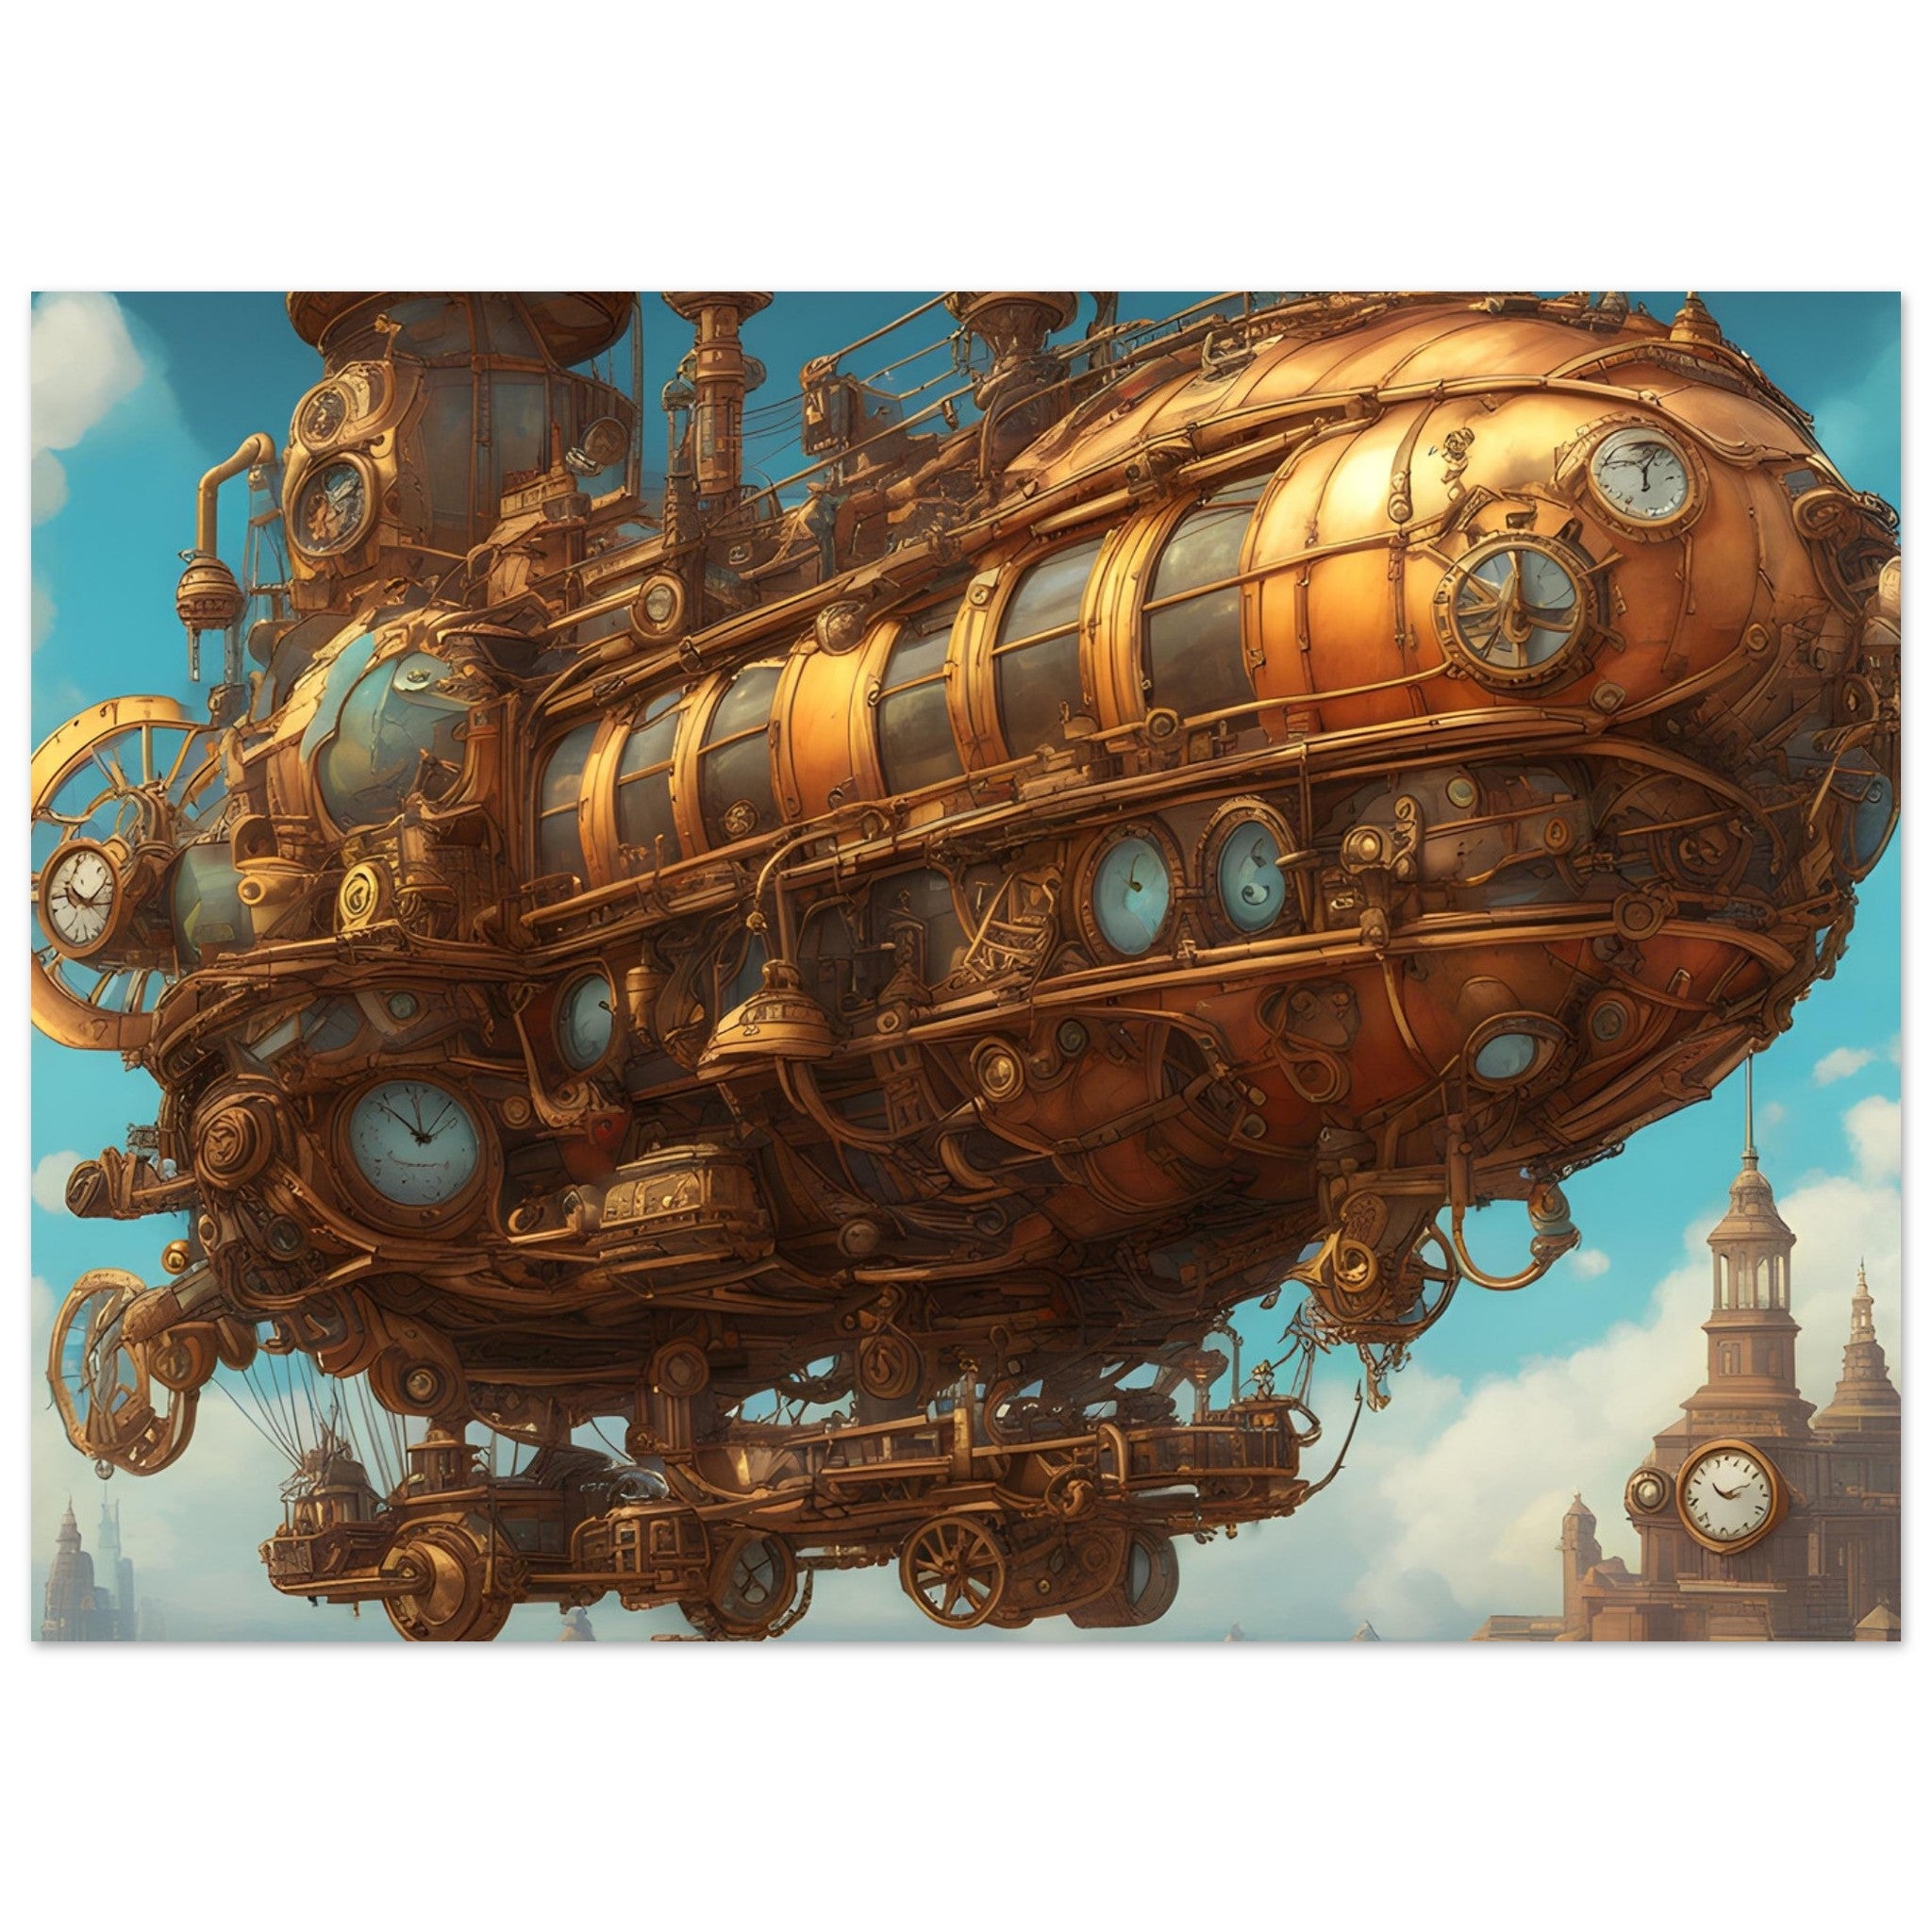 Steampunk Art - The Airship Gale's Whisper